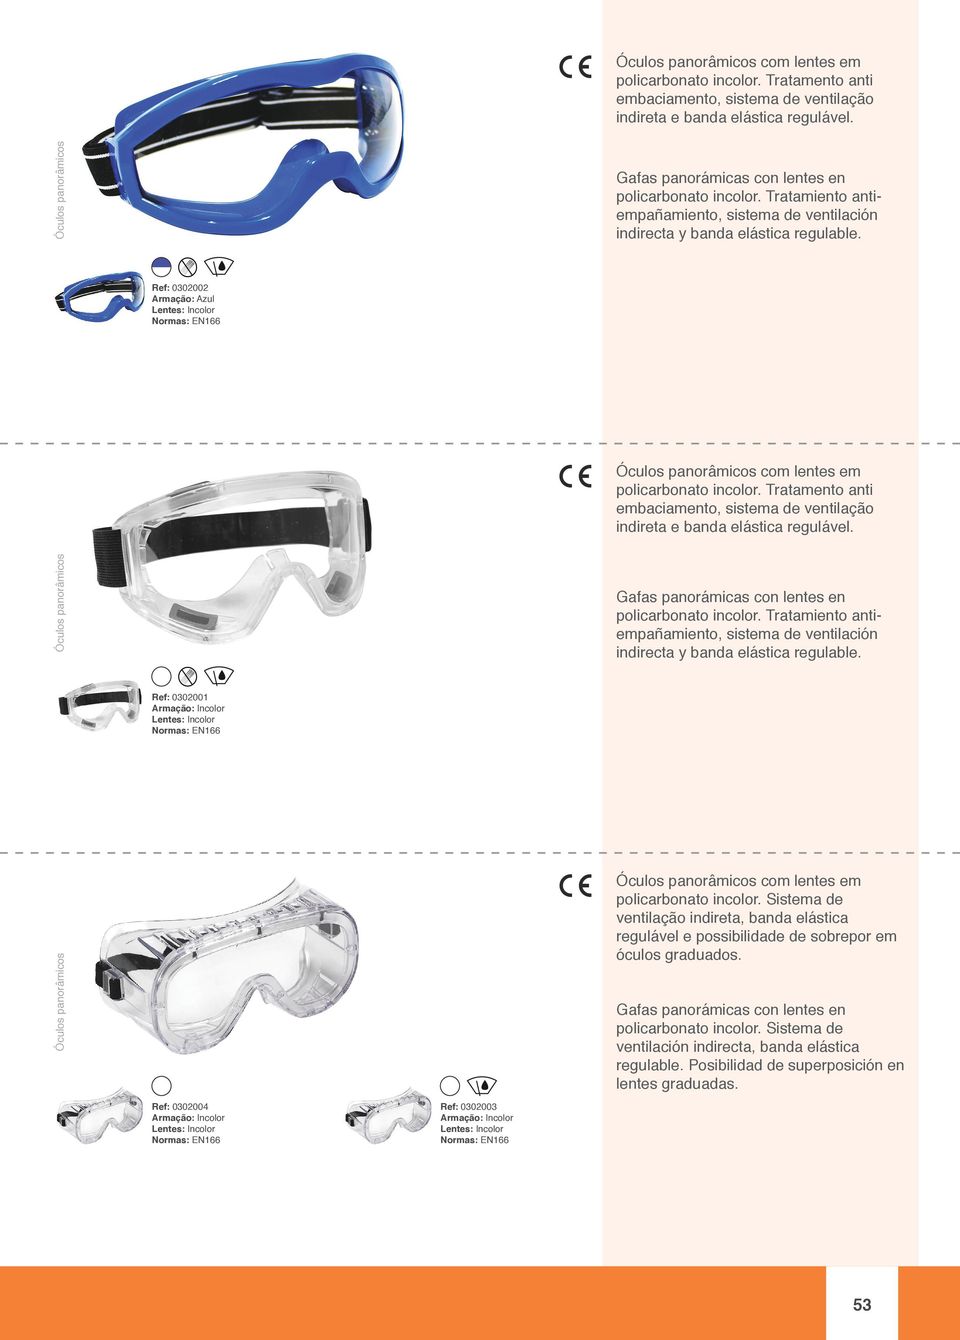 Ref: 0302002 Armação: Azul   Ref: 0302001 Óculos panorâmicos Ref: 0302004 Ref: 0302003 Óculos panorâmicos com lentes em policarbonato incolor.